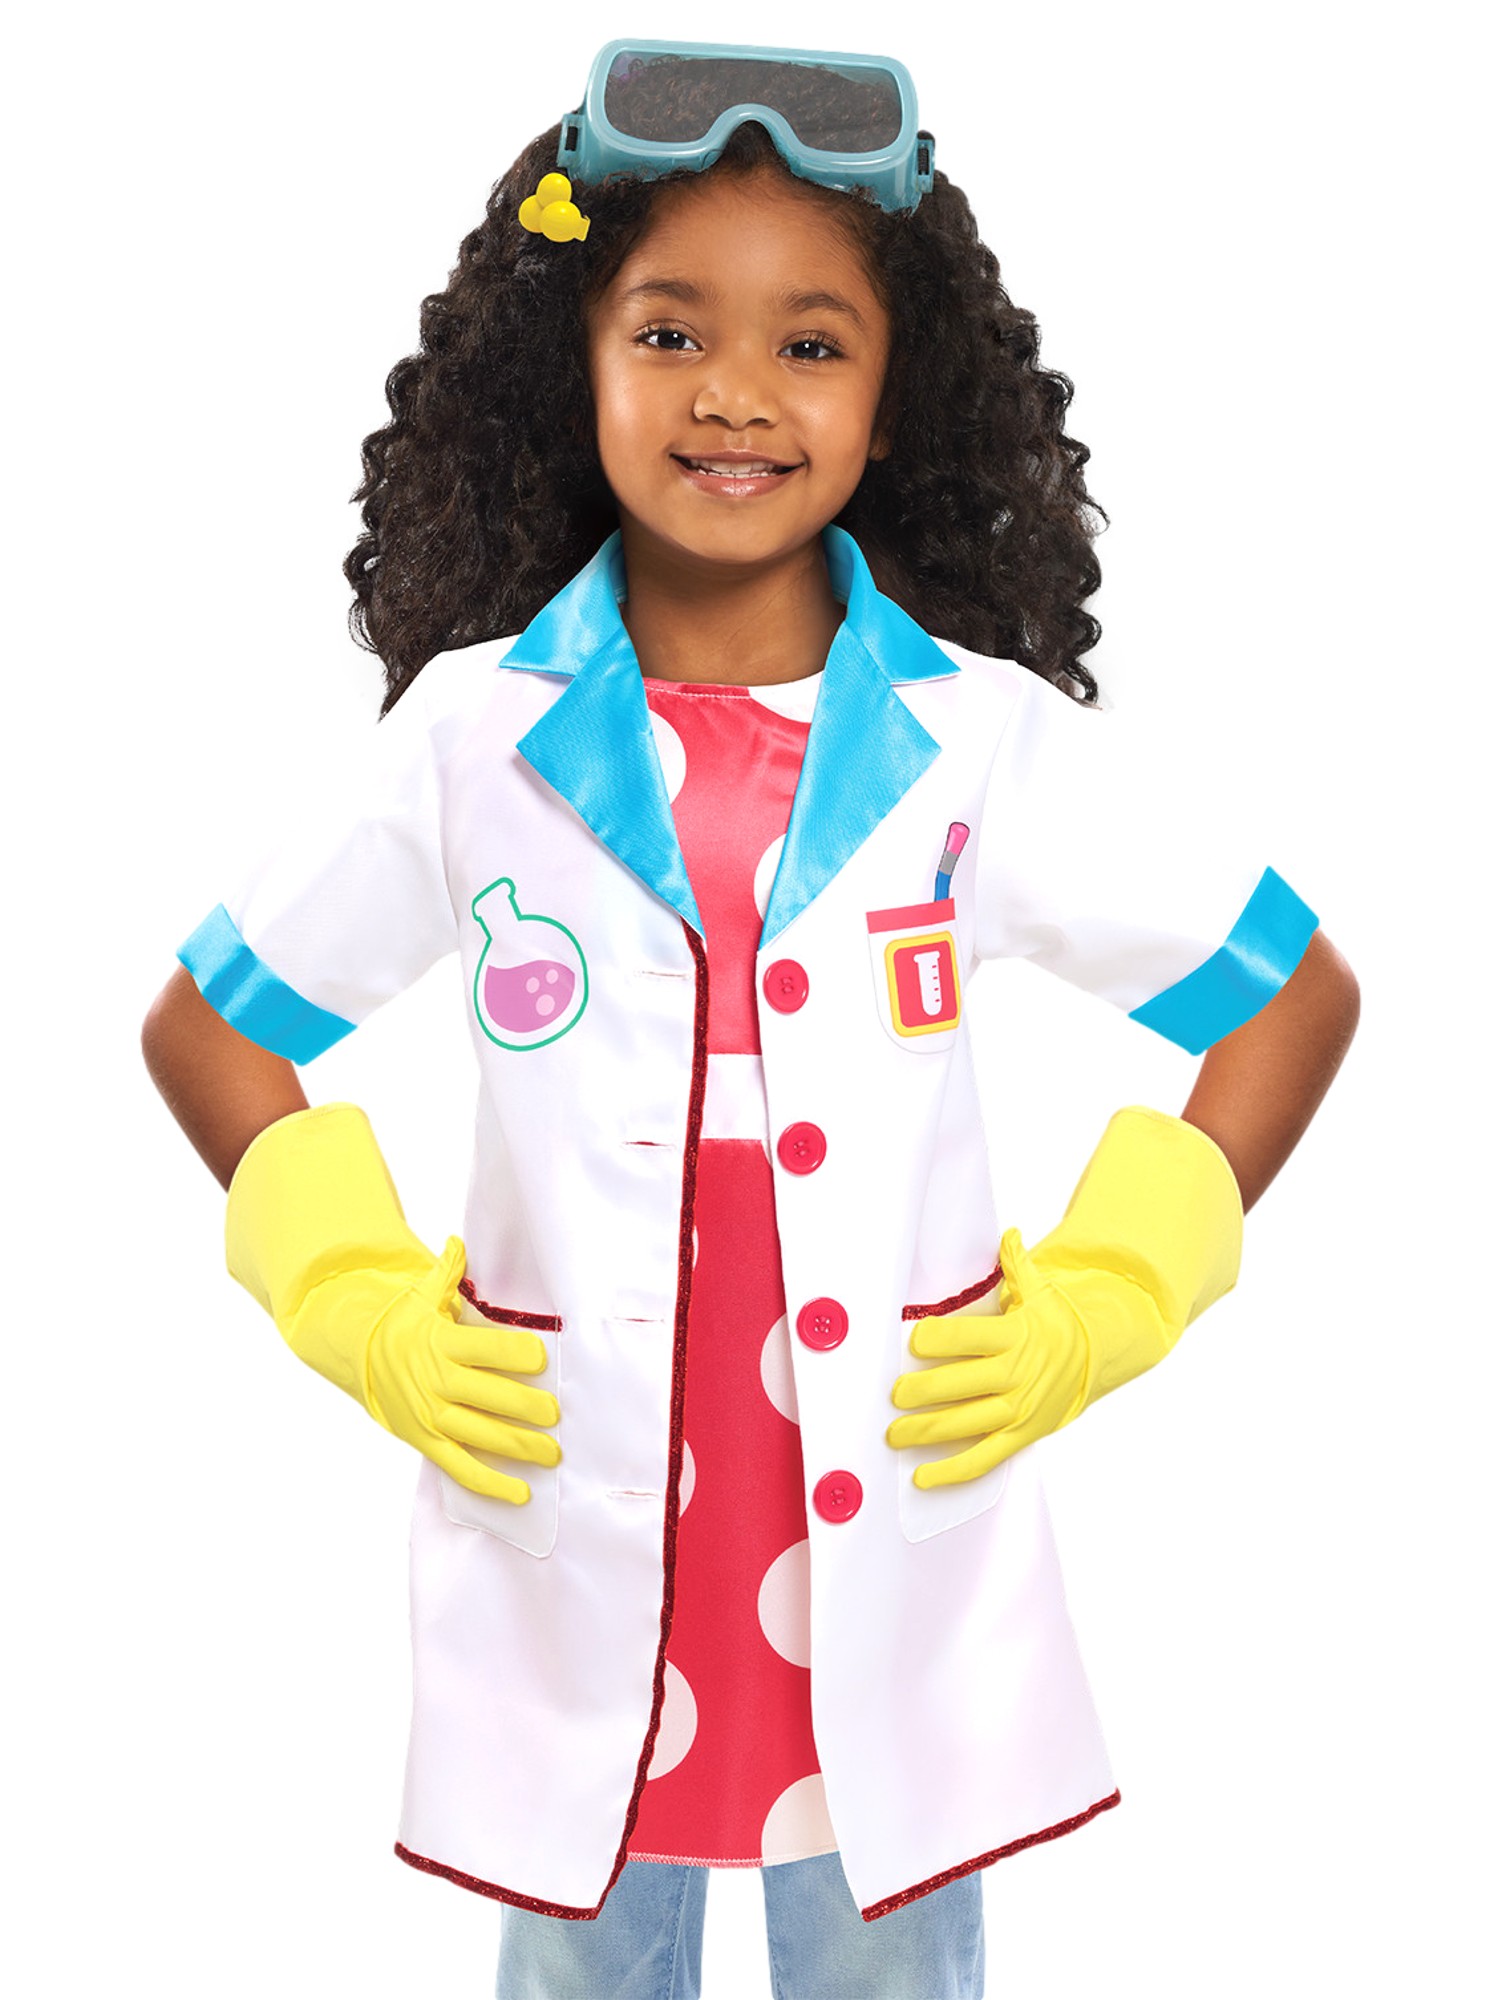 ADA TWIST Just Play Girls Ada Twist Scientist Costume Set Gloves & Lab Coat Small (4-6X)